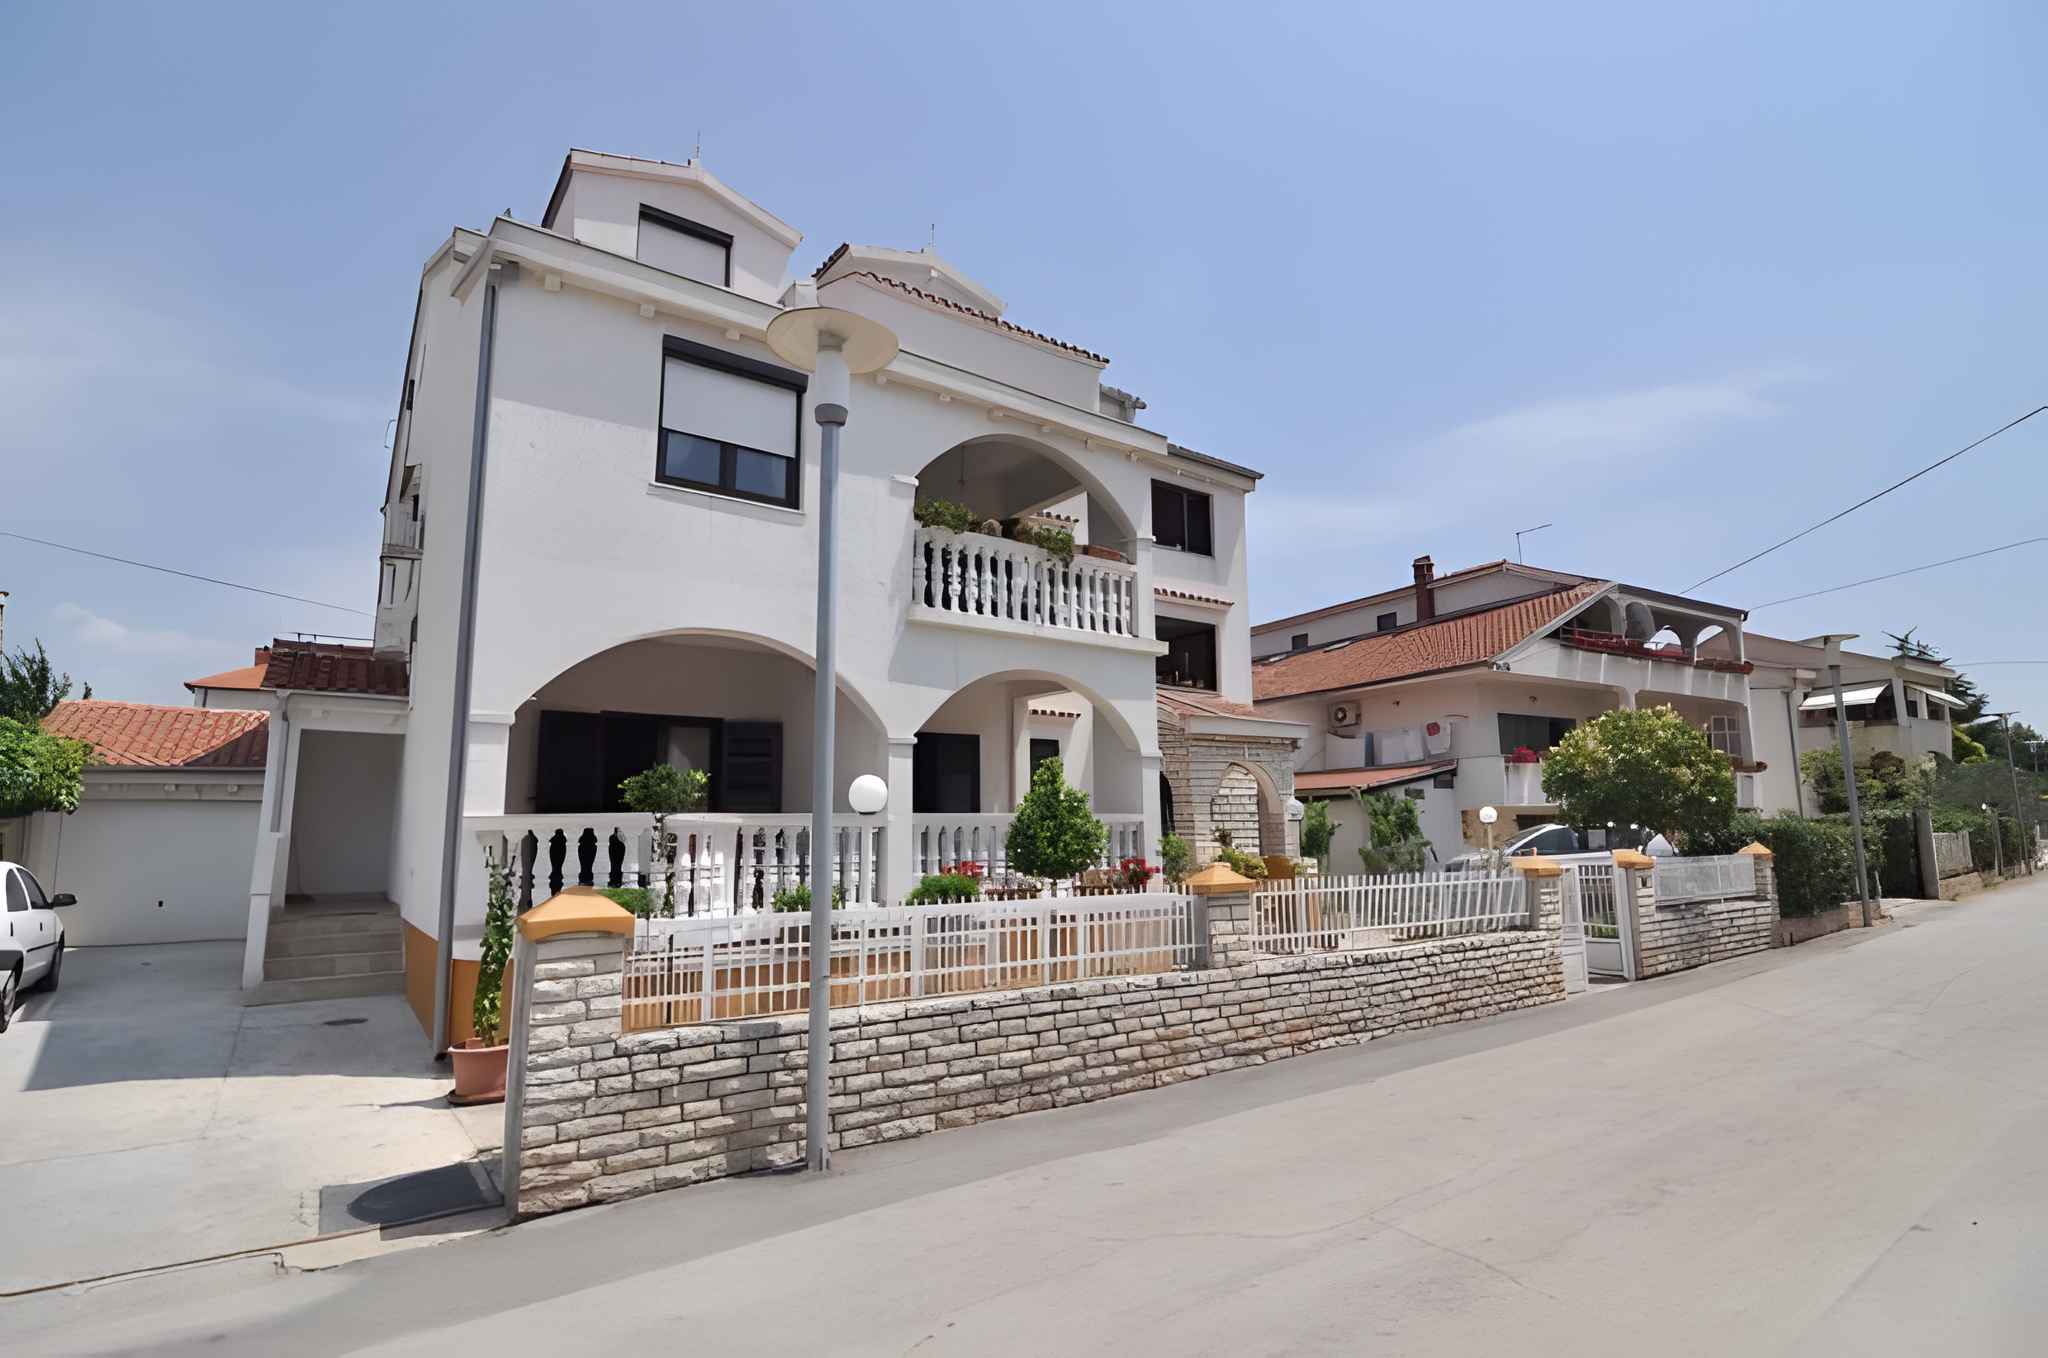 Ferienwohnung mit Meerblick und Balkon Ferienhaus in Dalmatien